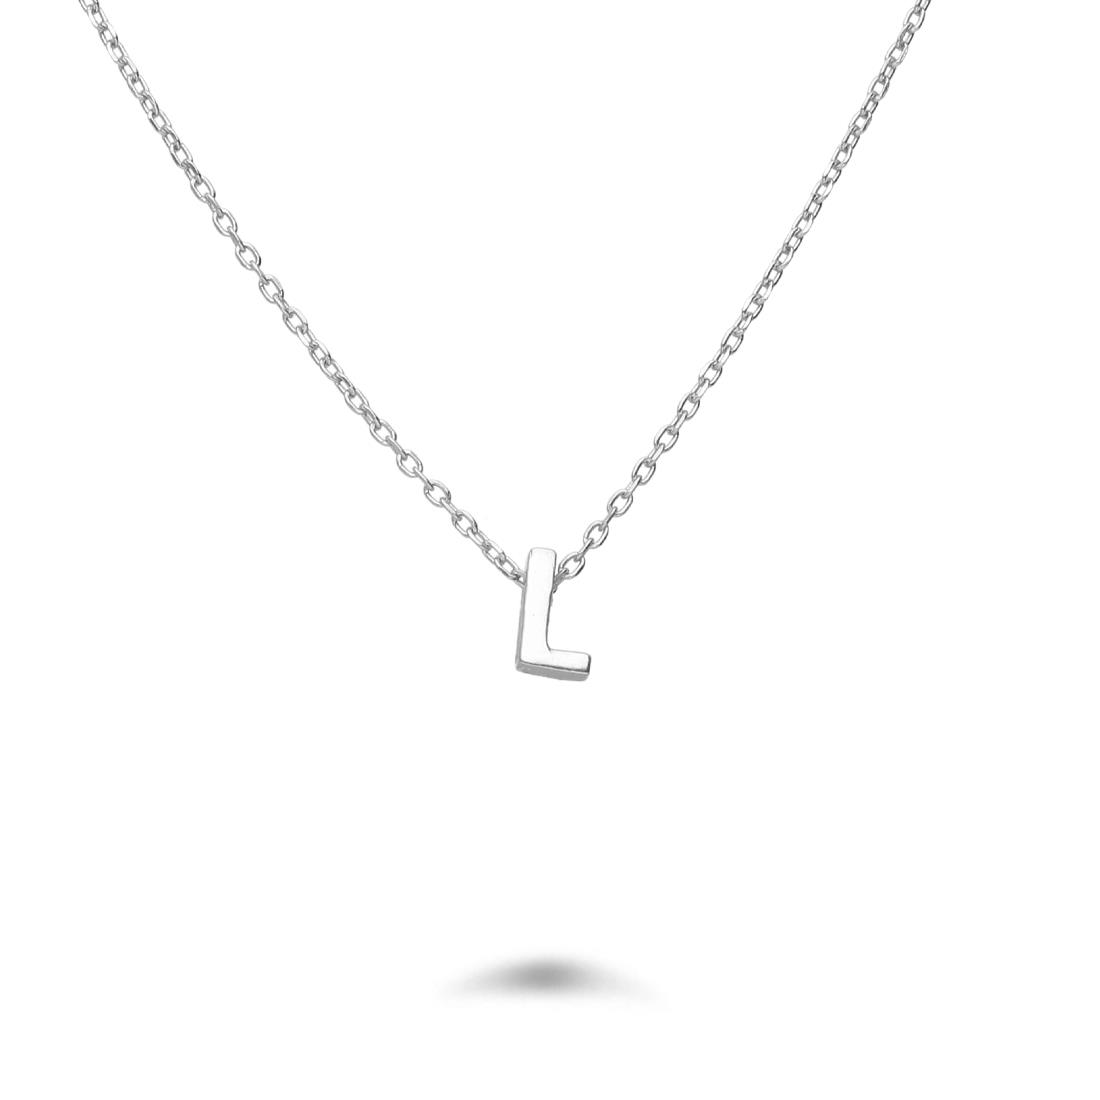 Rolò necklace in rhodium-plated silver with letter L - DESIDERI PREZIOSI